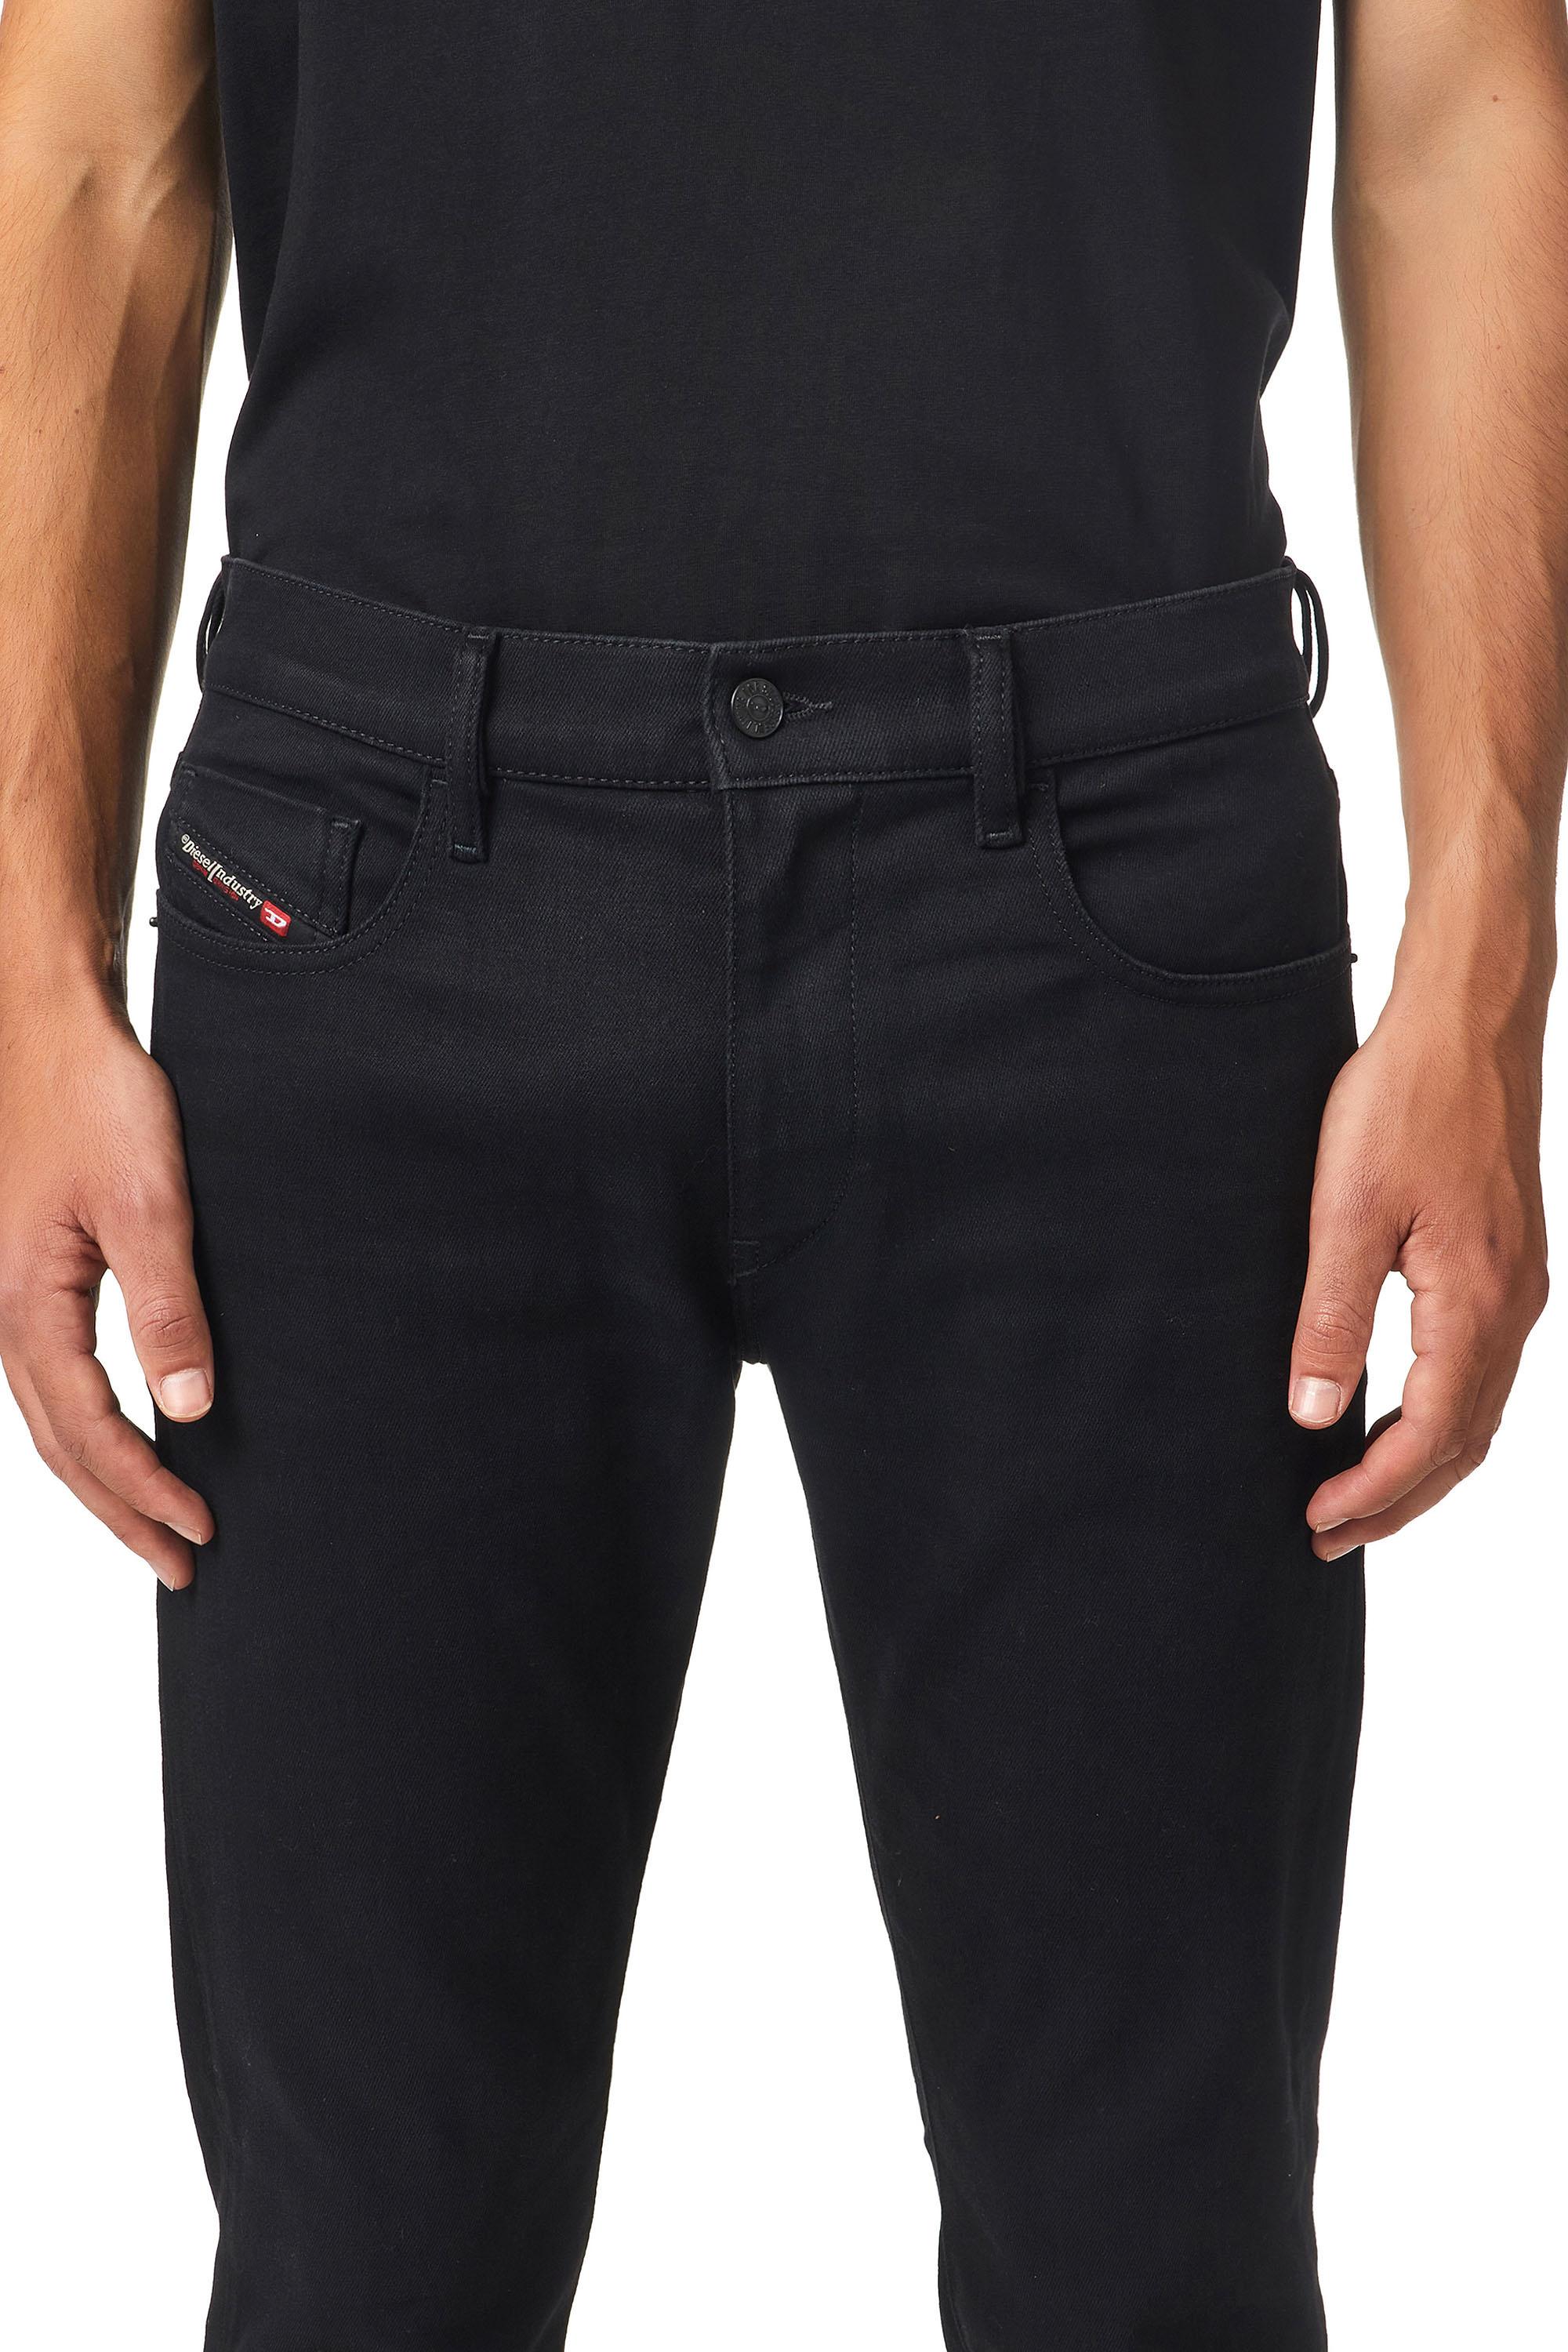 Diesel - D-Strukt Slim JoggJeans® Z9A29, Black/Dark grey - Image 5